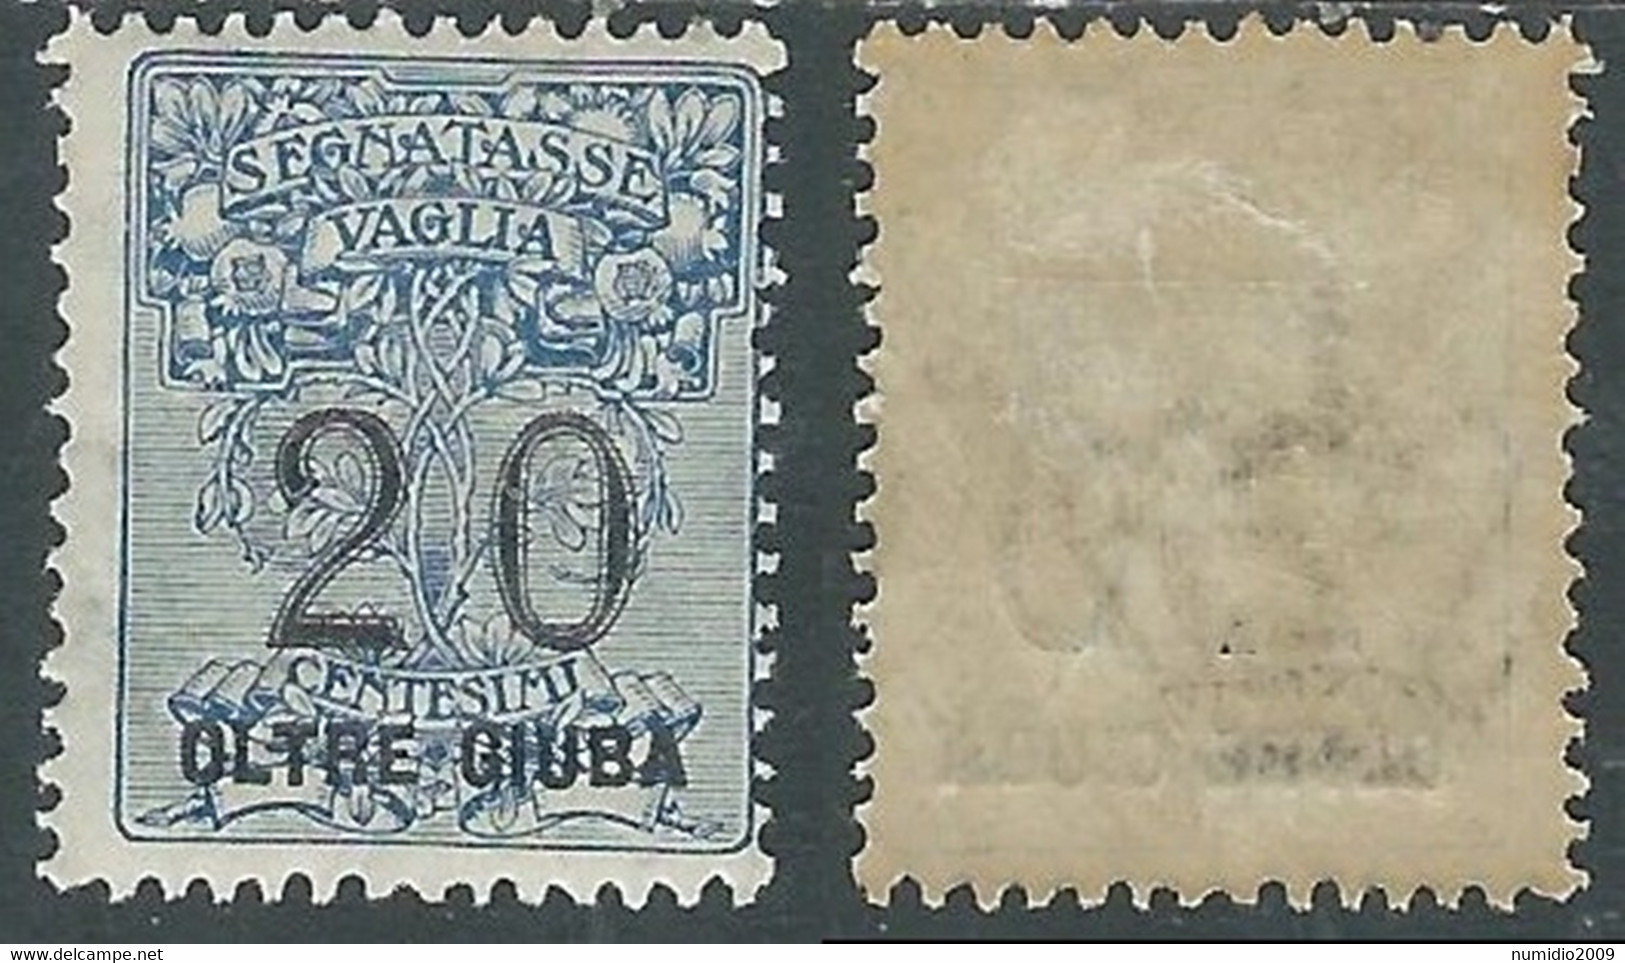 1925 OLTRE GIUBA SEGNATASSE PER VAGLIA 20 CENT MH * - E201 - Oltre Giuba